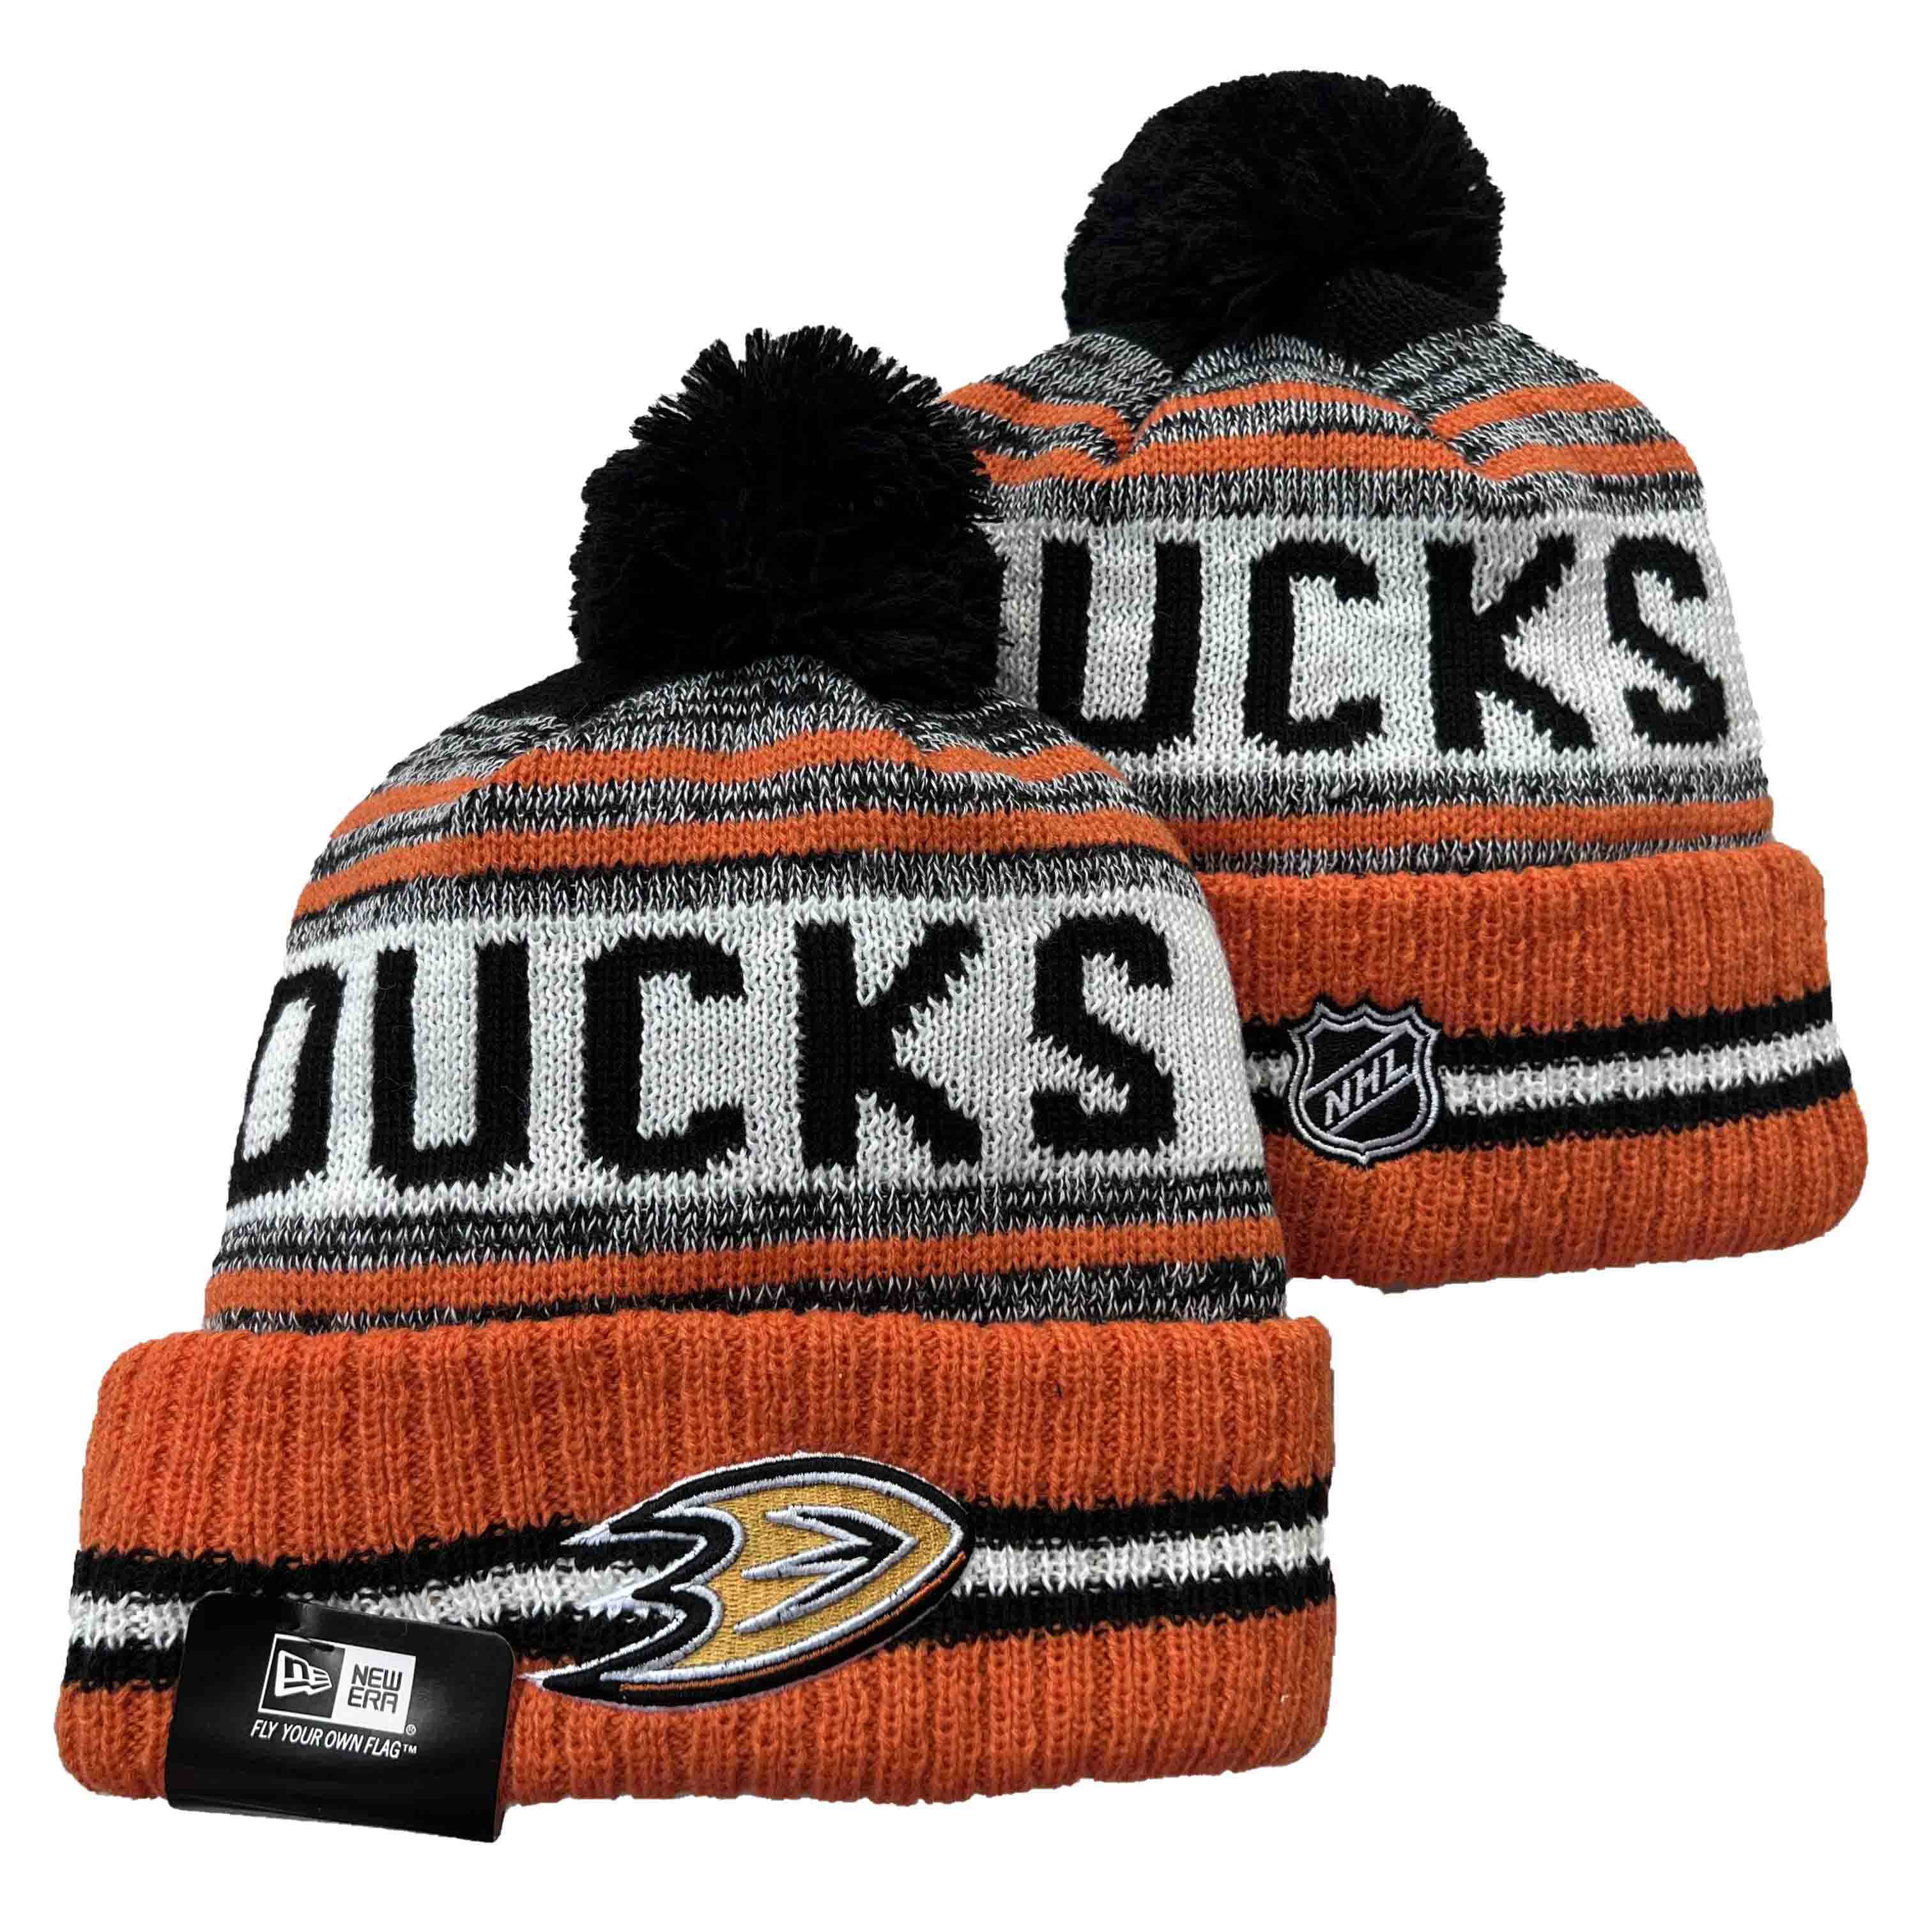 Anaheim Ducks knit hat YD